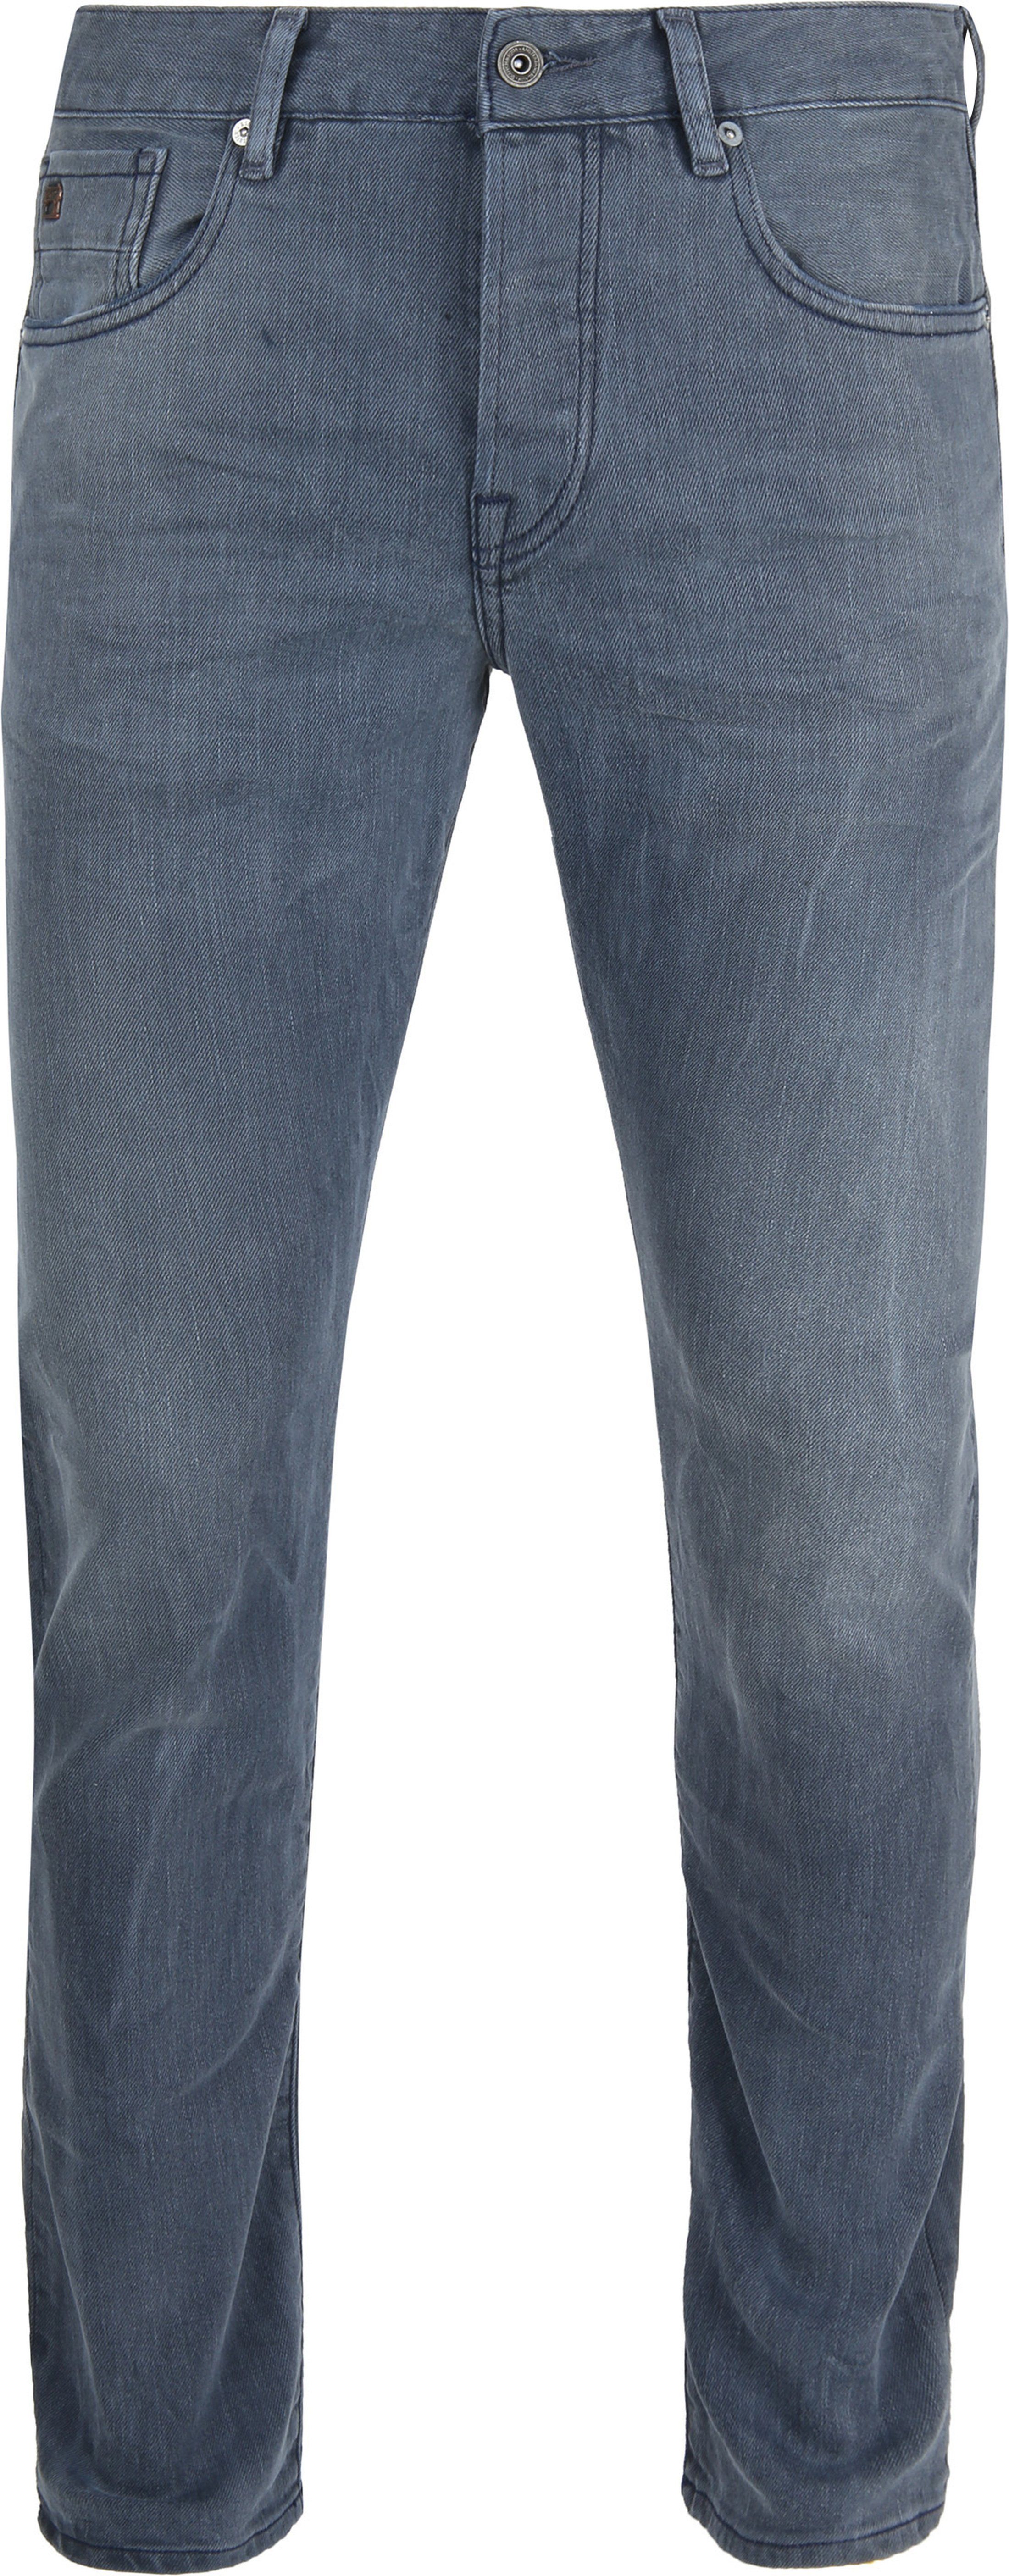 Scotch and Soda Ralston Jeans Concrete Bleach Dark Grey Grey size W 33